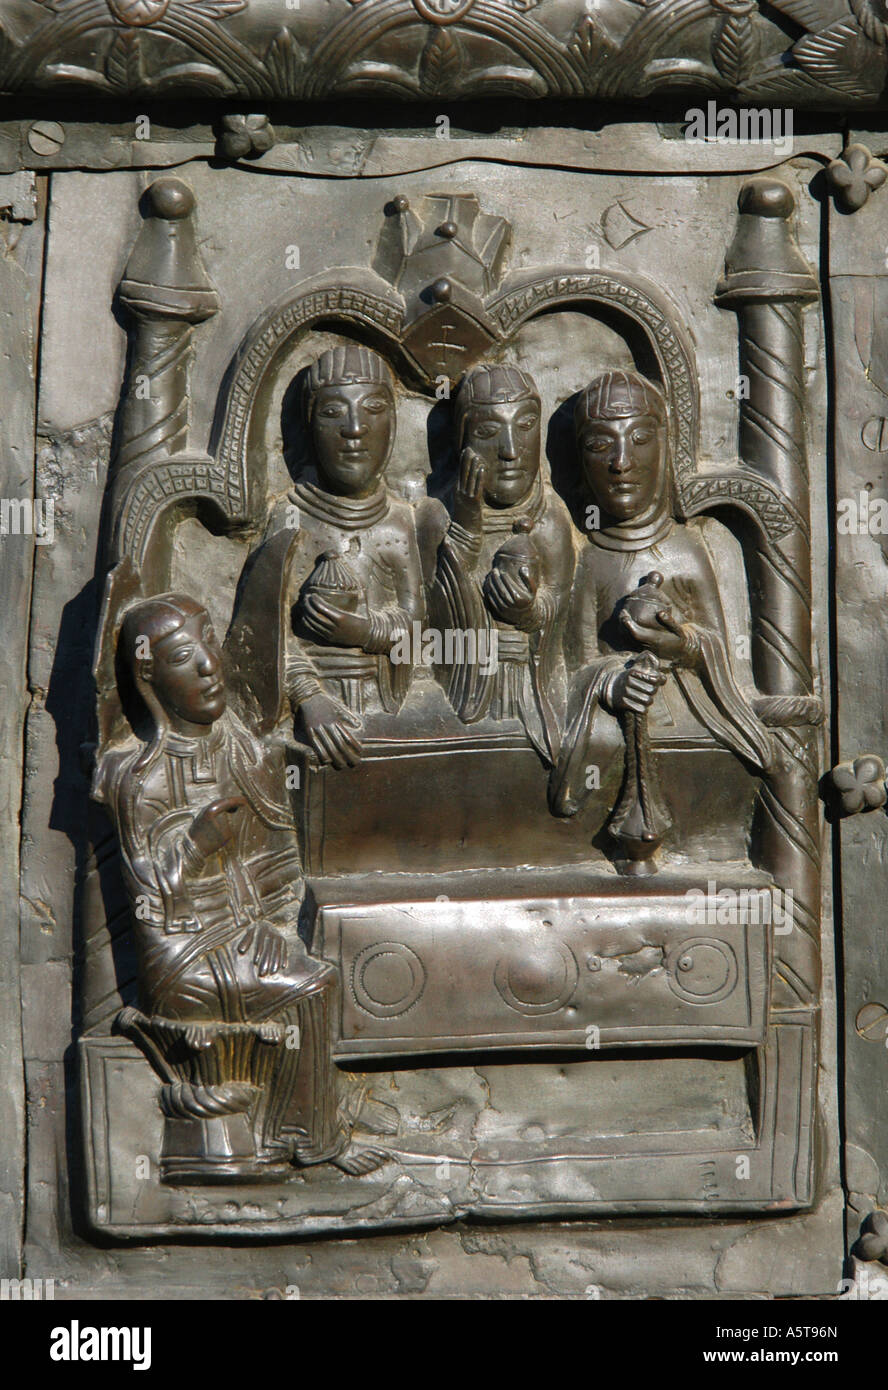 Le Saint Sépulcre de Jésus Christ. Détail de l'Magdeburg (Sigtuna) porte de la cathédrale Sainte-Sophie de Novgorod, Russie Banque D'Images